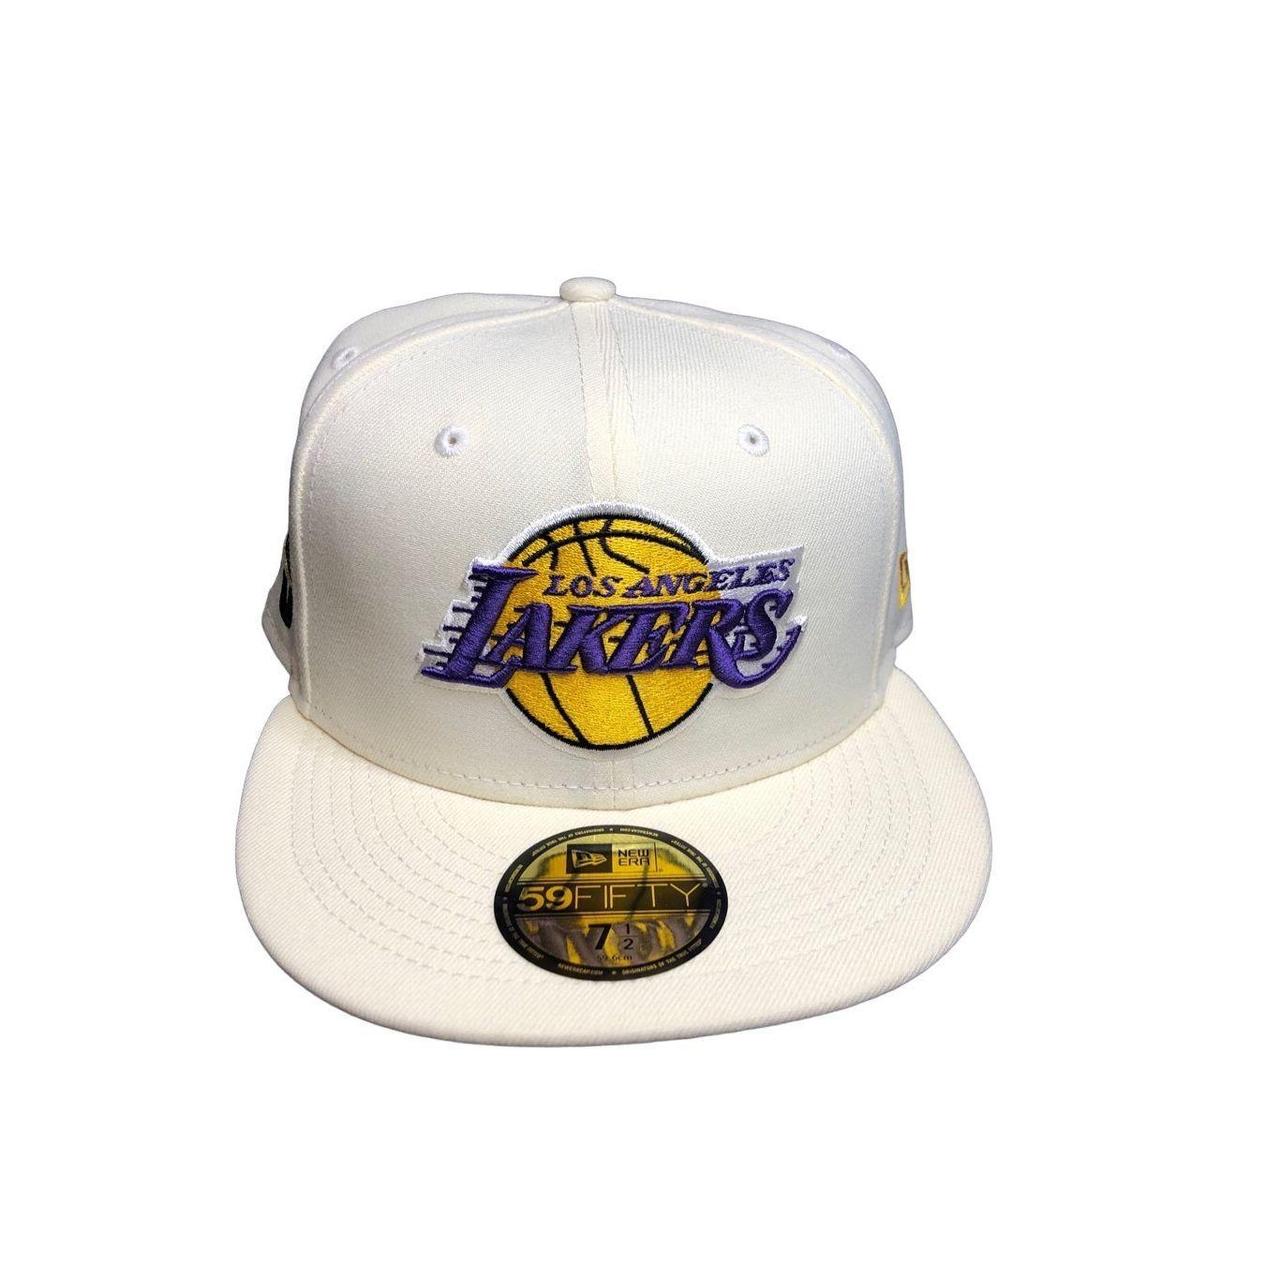 Baseball Hats - NBA Los Angeles Lakers 75th Anniversary Gold Snapback